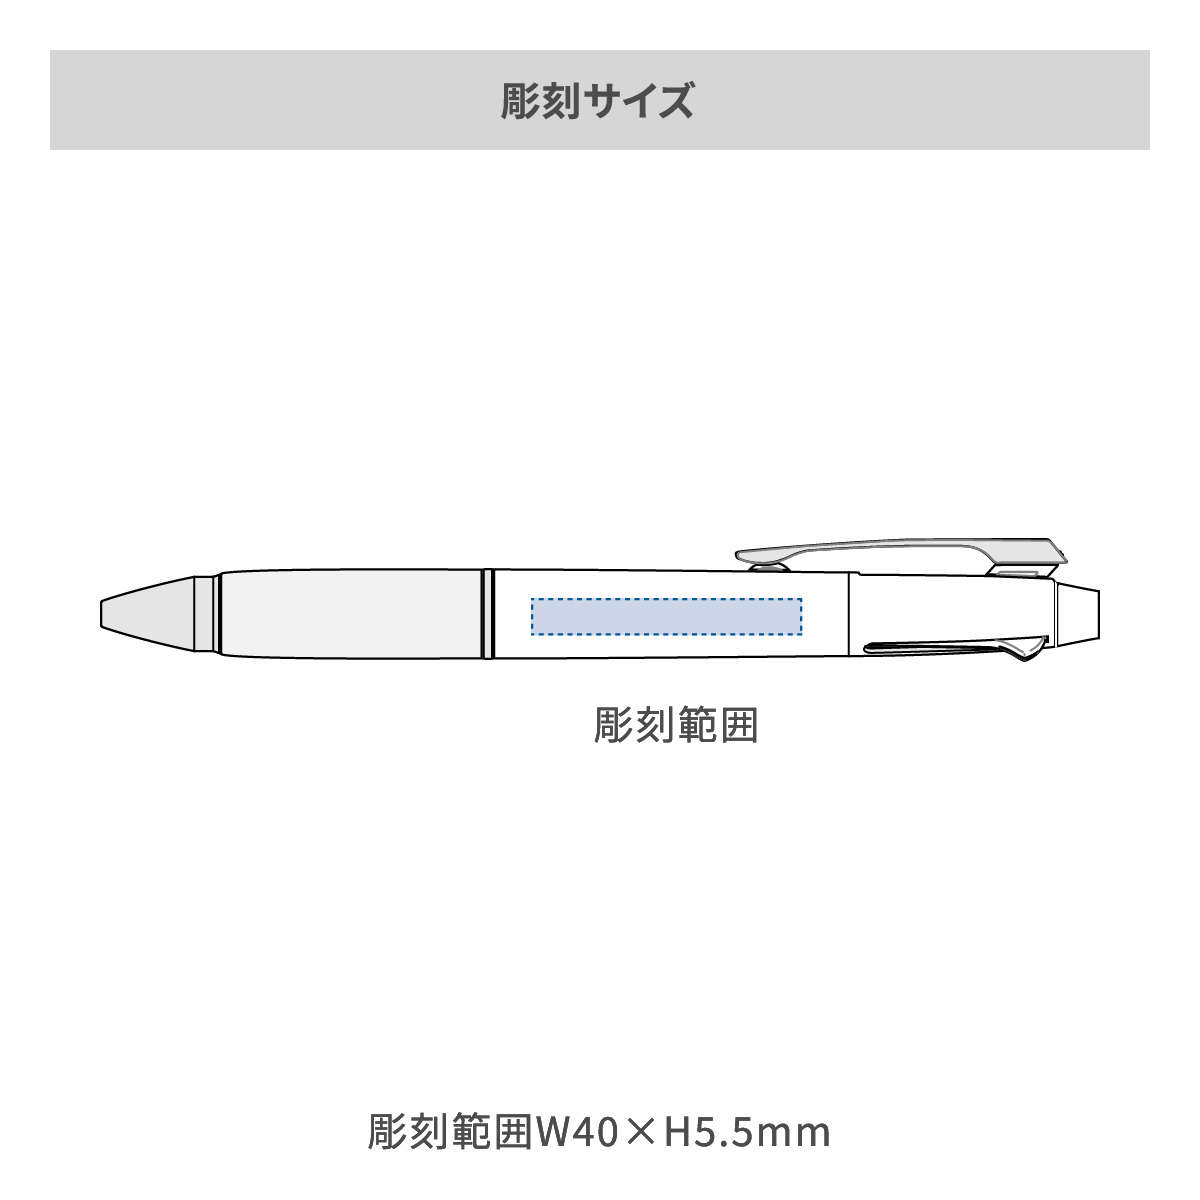 【短納期】三菱鉛筆 ジェットストリーム 多機能ペン 2&1 0.5mm【多機能ペン / レーザー彫刻】 画像2